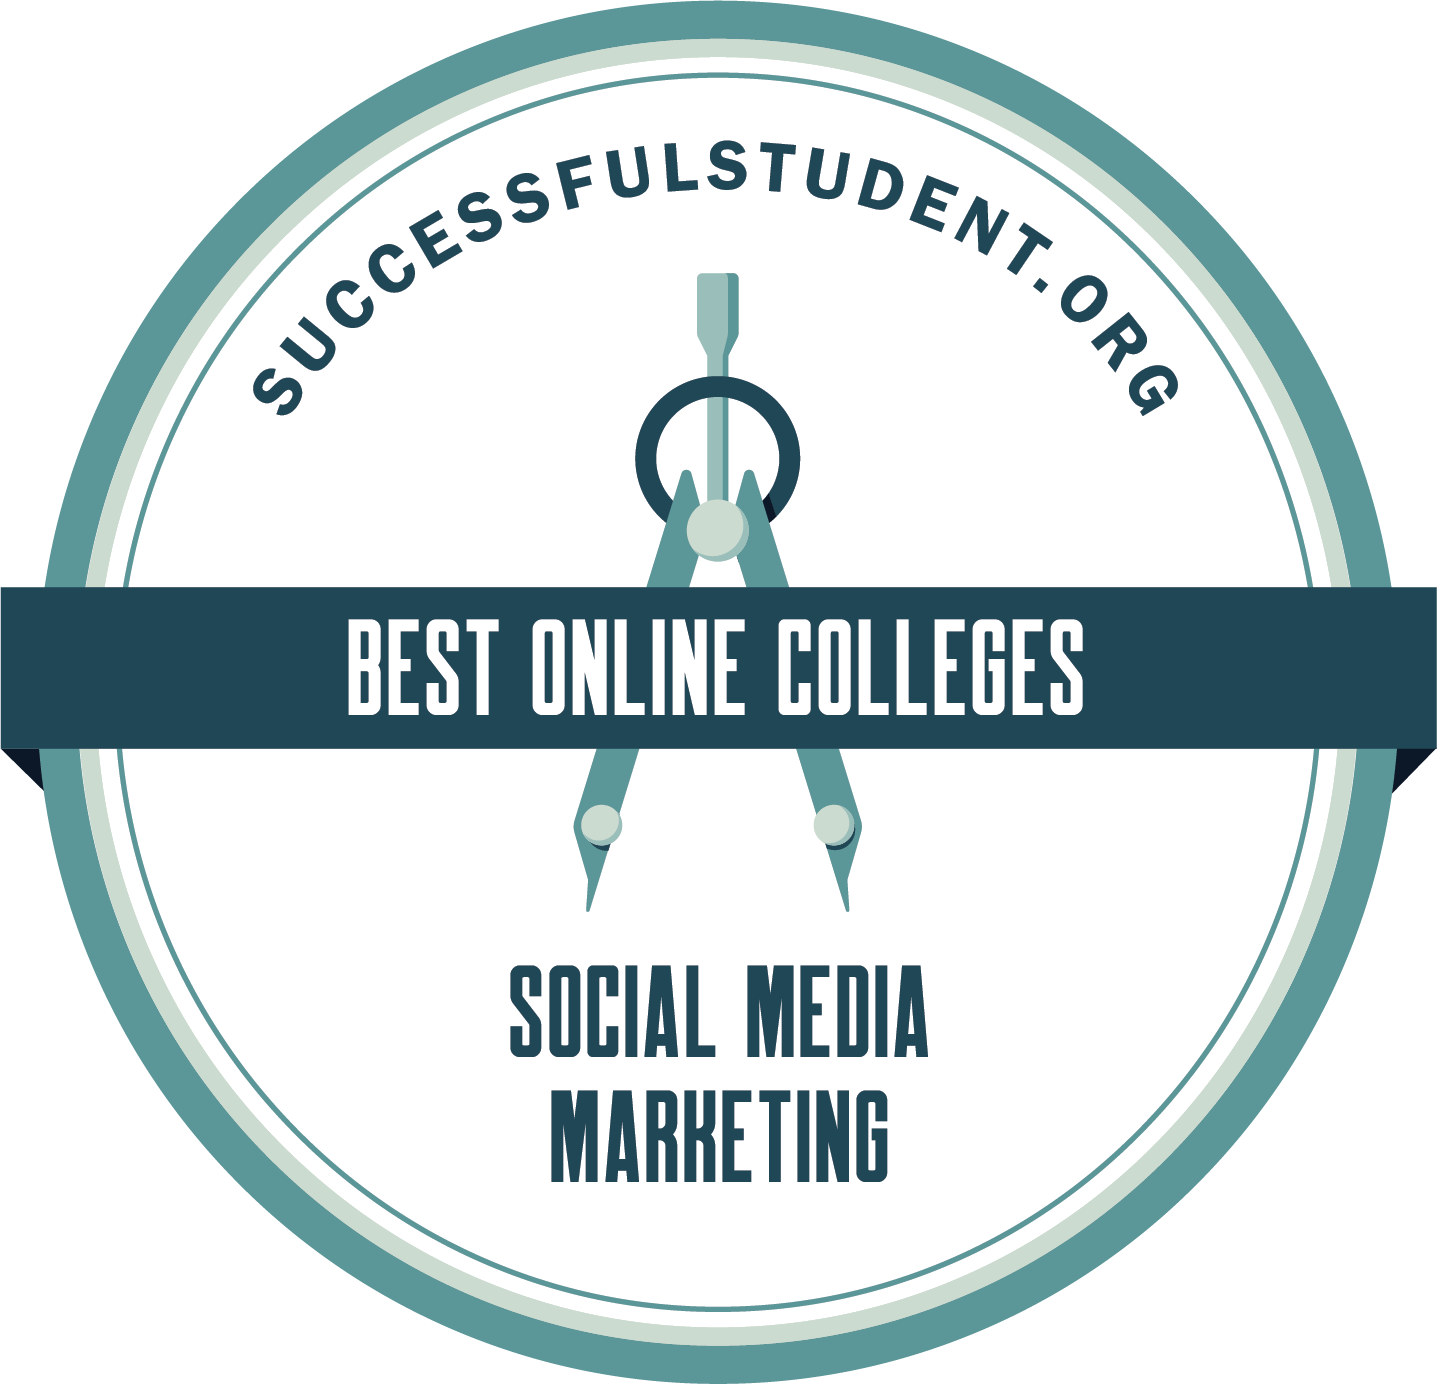 Social Media Marketing Degree: The Best Online Programs's Badge